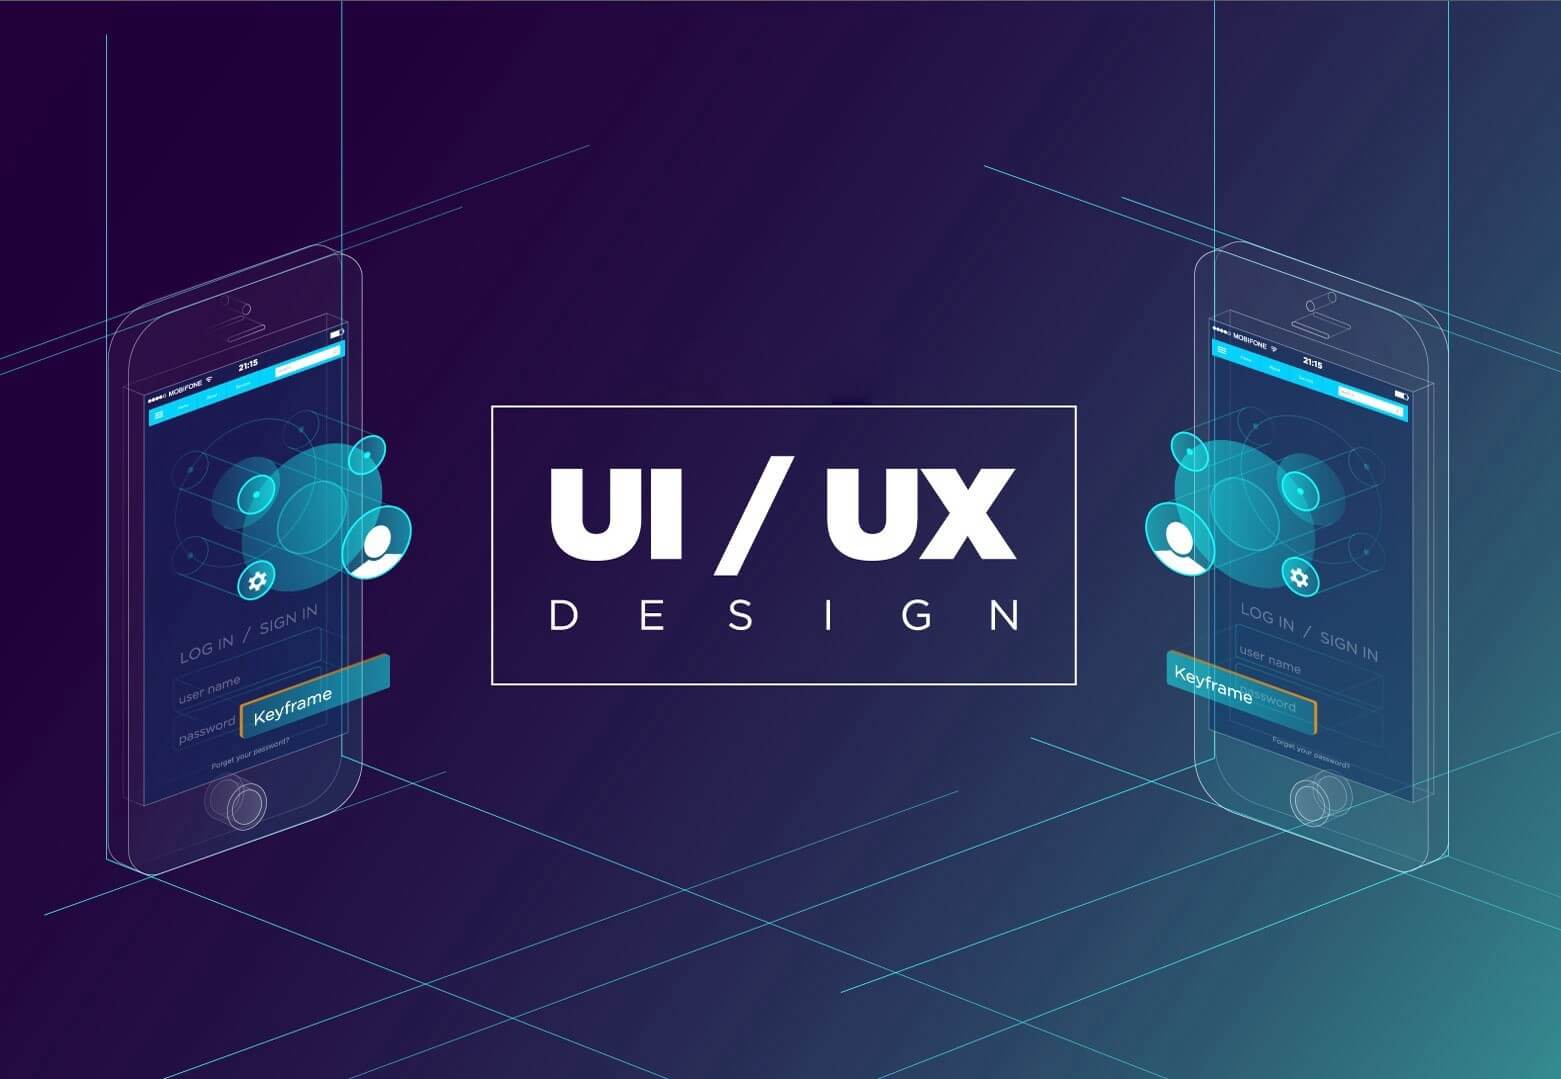 Thiết kế UI/UX là quá trình tạo tối ưu hóa sự hài lòng và sự tiện lợi.